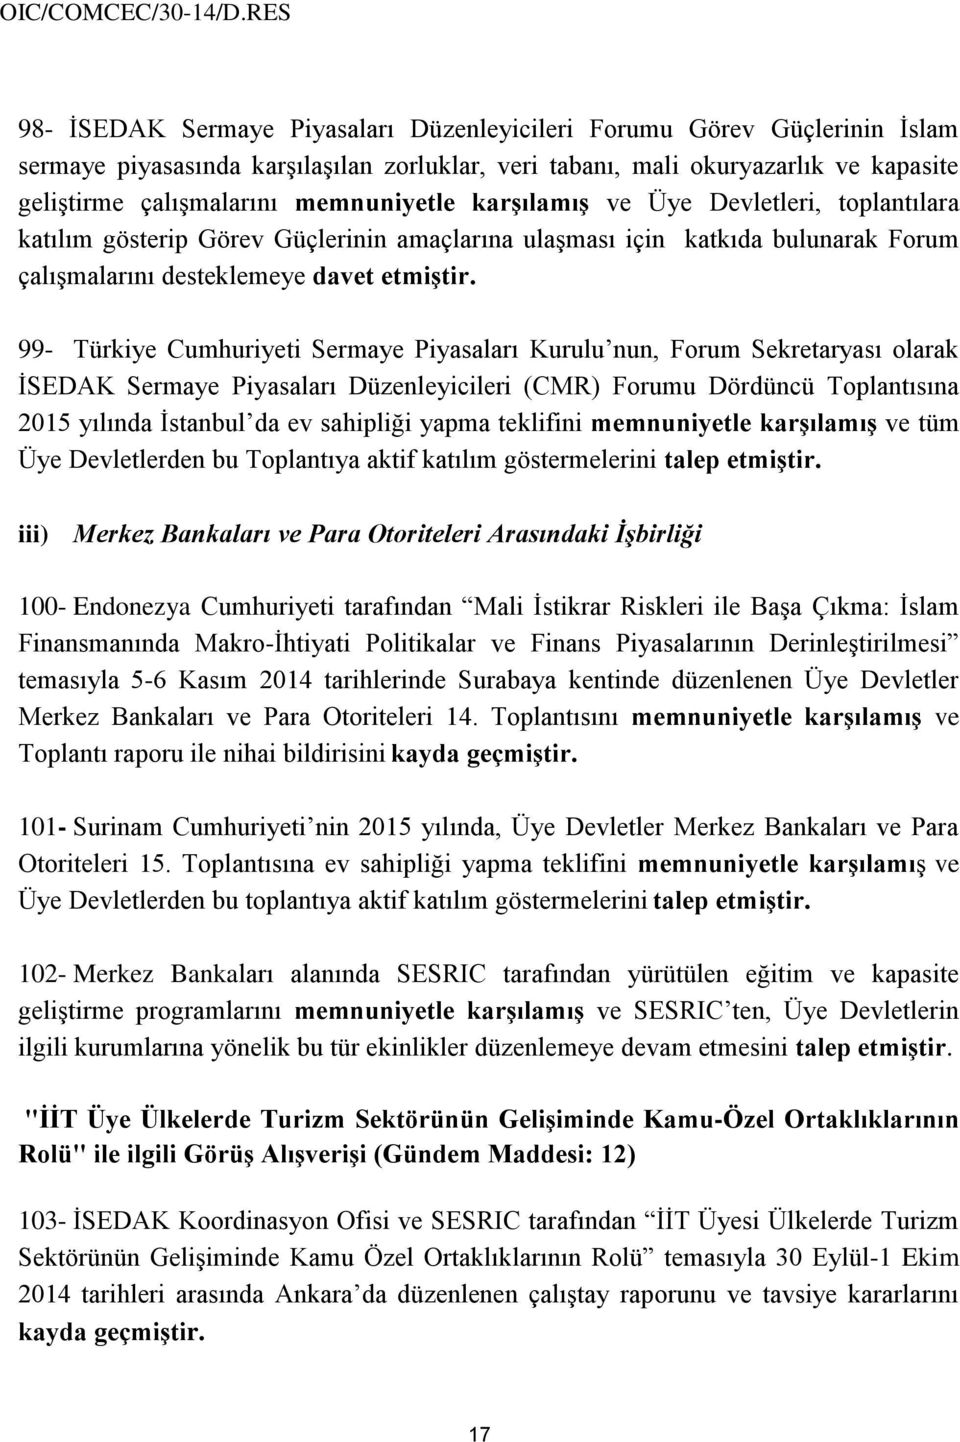 99- Türkiye Cumhuriyeti Sermaye Piyasaları Kurulu nun, Forum Sekretaryası olarak İSEDAK Sermaye Piyasaları Düzenleyicileri (CMR) Forumu Dördüncü Toplantısına 2015 yılında İstanbul da ev sahipliği